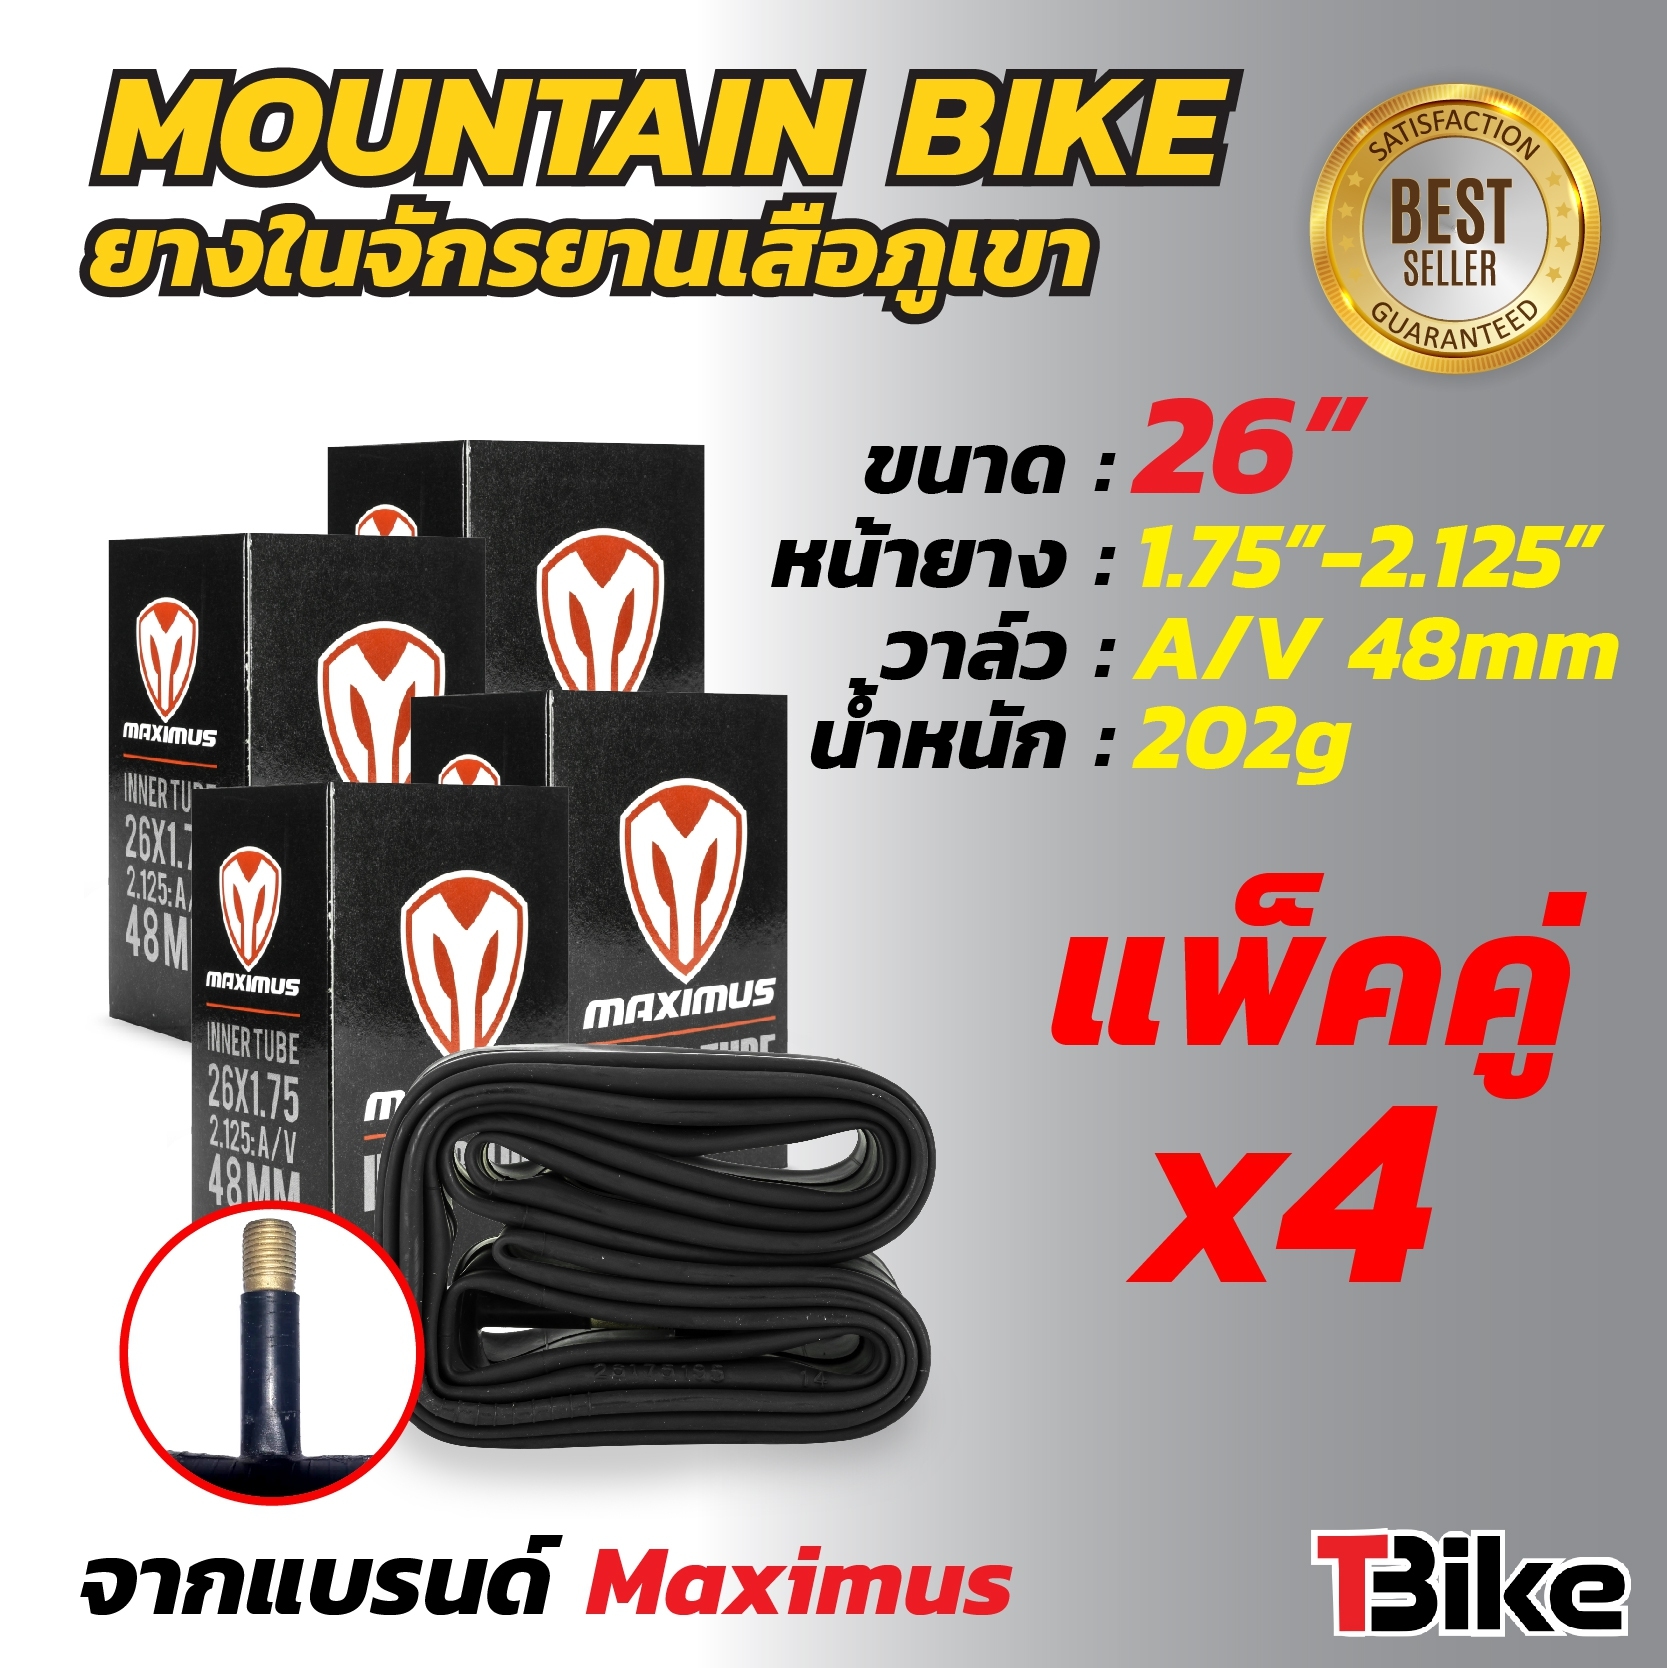 ยางในจักรยาน เสือภูเขา ยางในเนื้อดี ต้องยางใน Maximus ใช้ดี ใช้ทน.ขนาด 26x1.75/2.125 A/V 48mm 